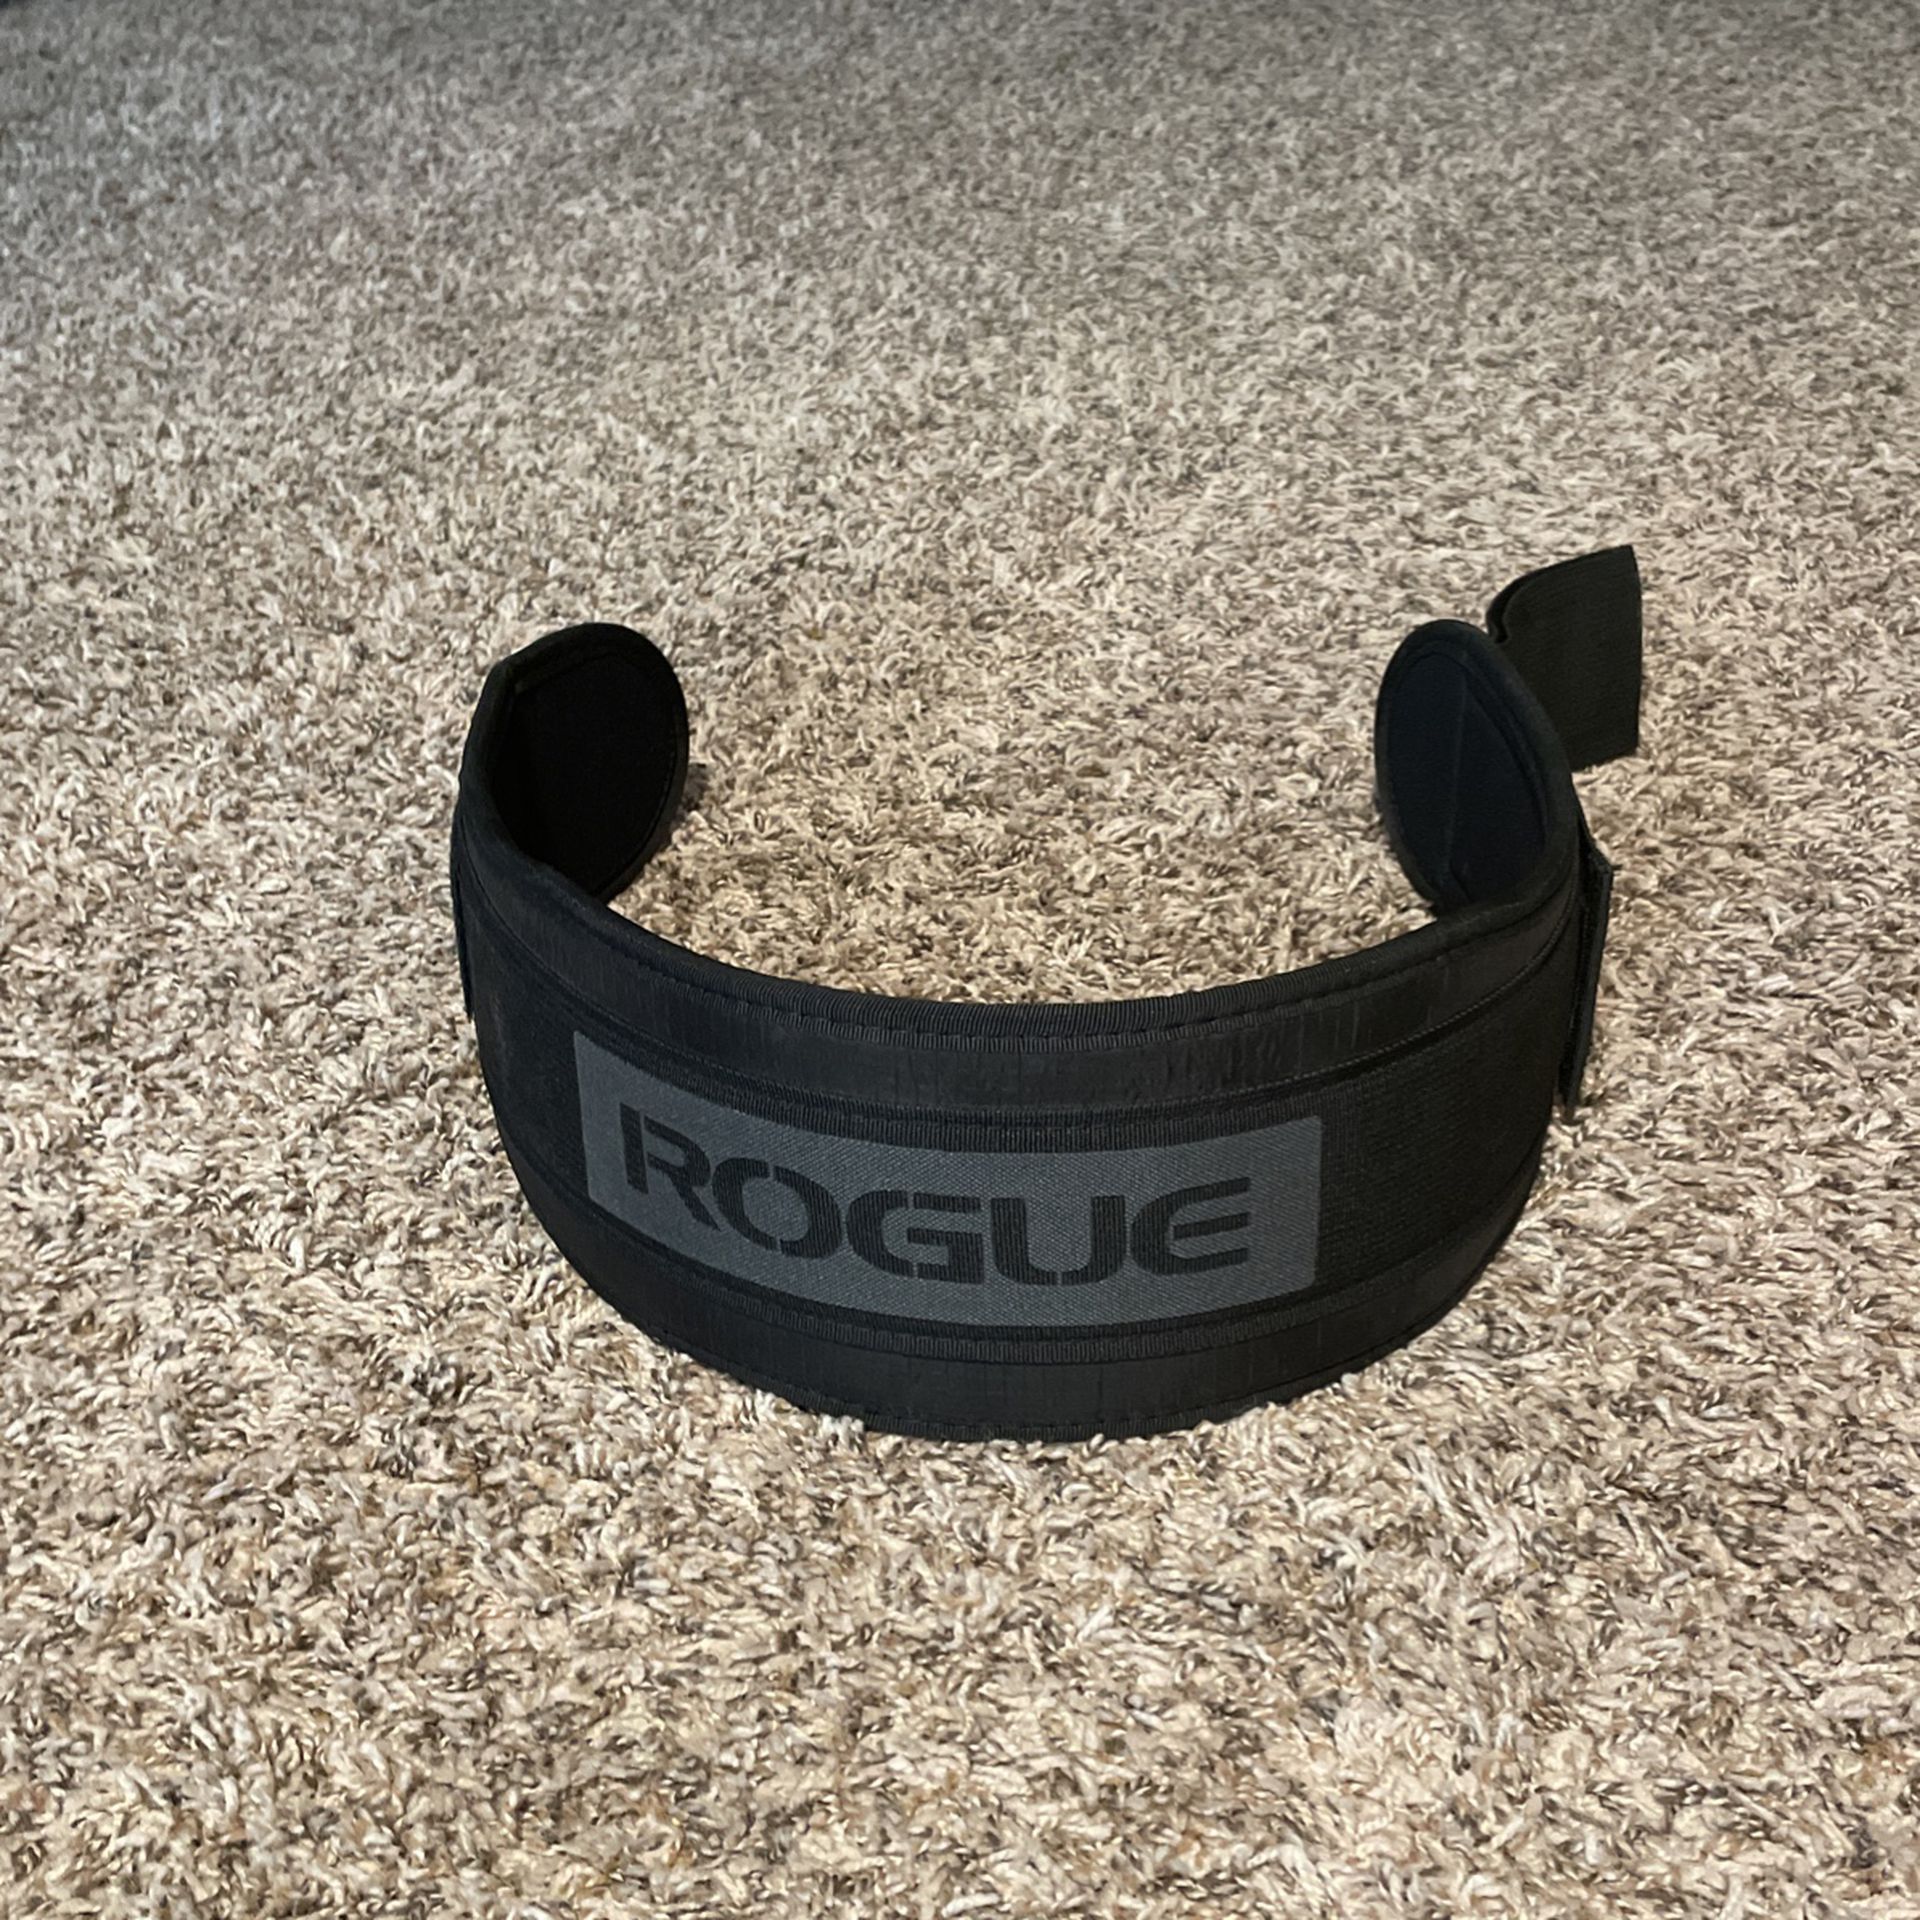 Rogue Lifting Belt